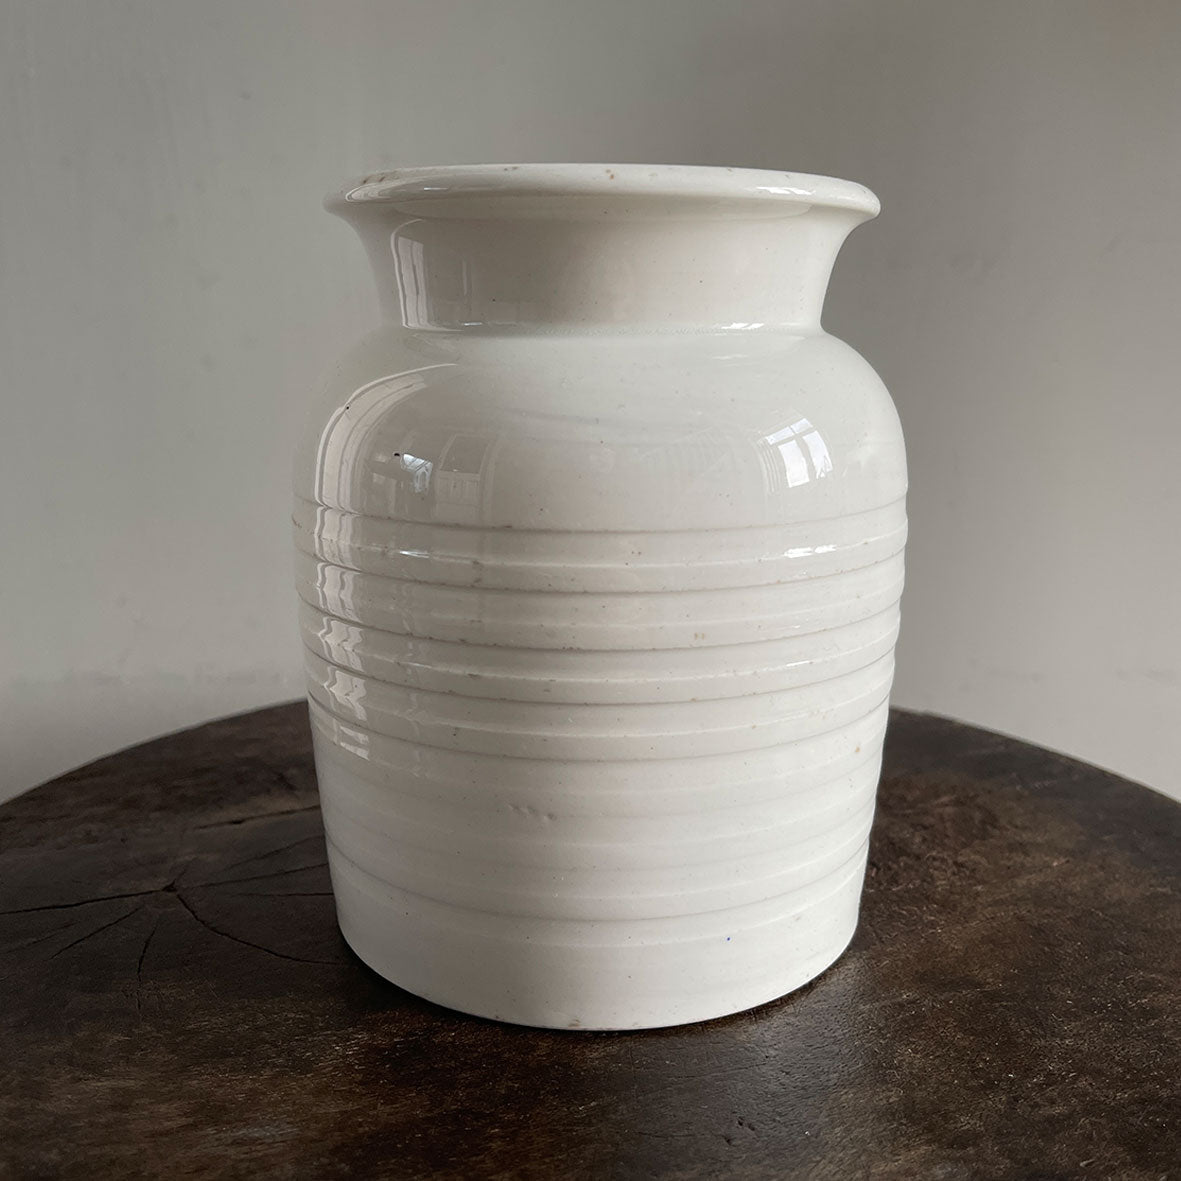 A vintage white ironstone banded Sago jar - SHOP NOW - www.intovintage.co.uk